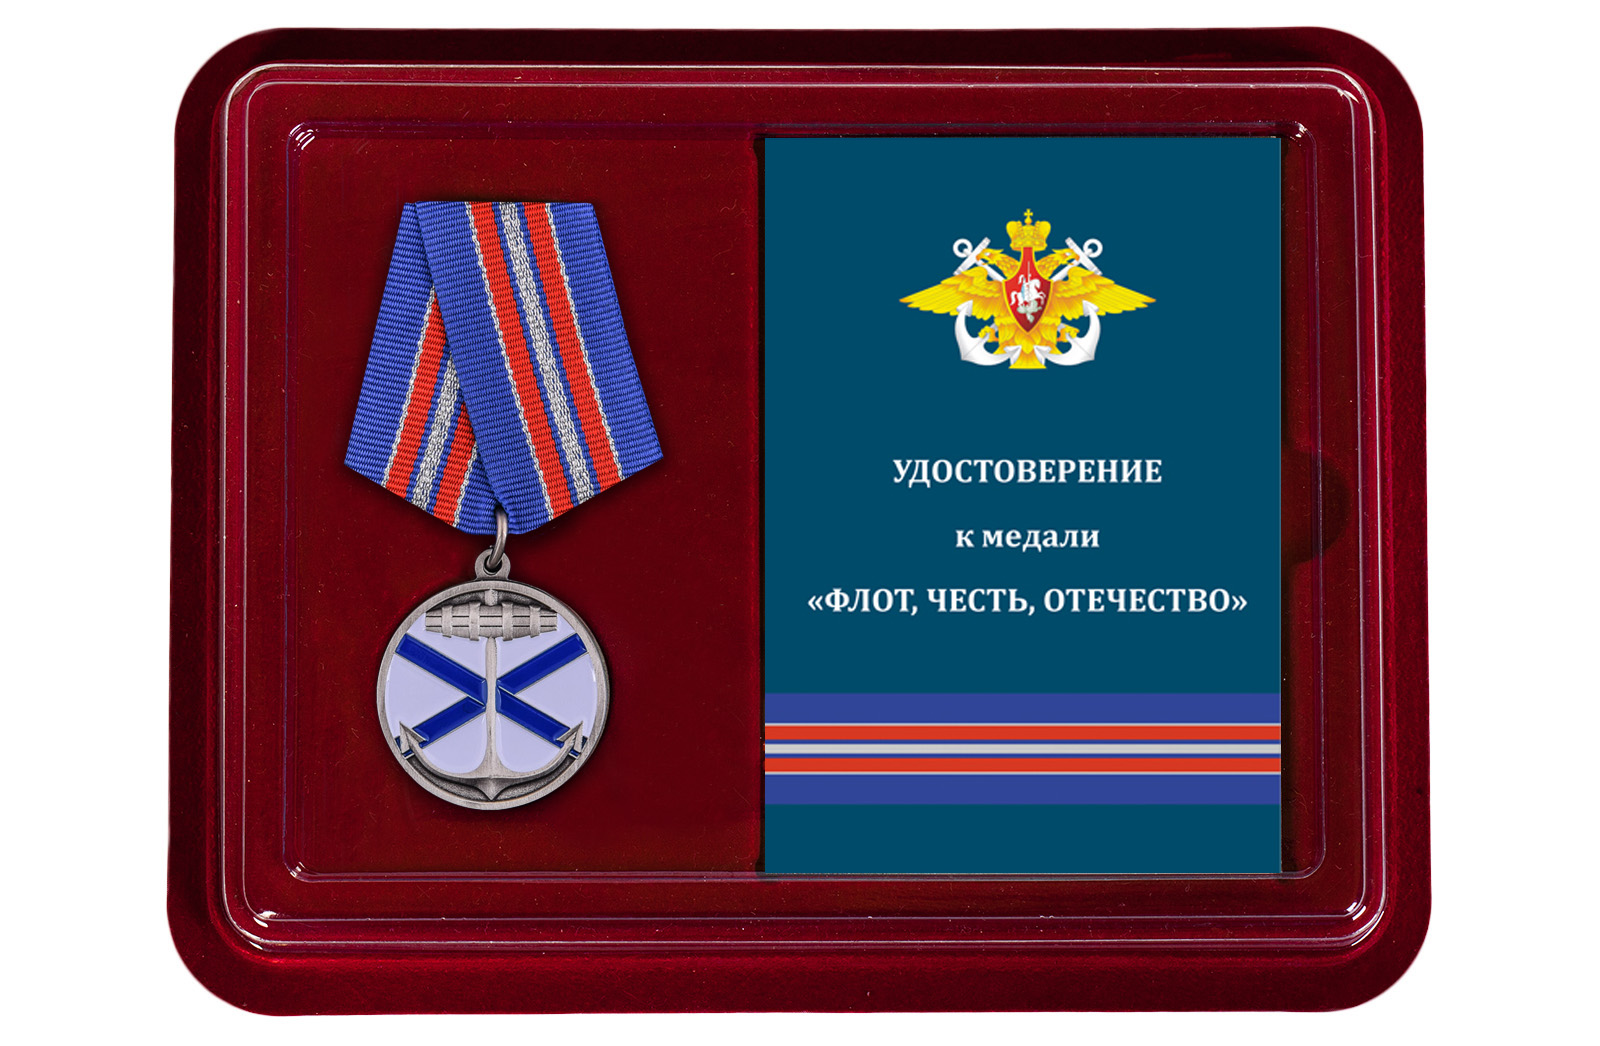 Купить медаль ВМФ РФ Андреевский флаг оптом или в розницу